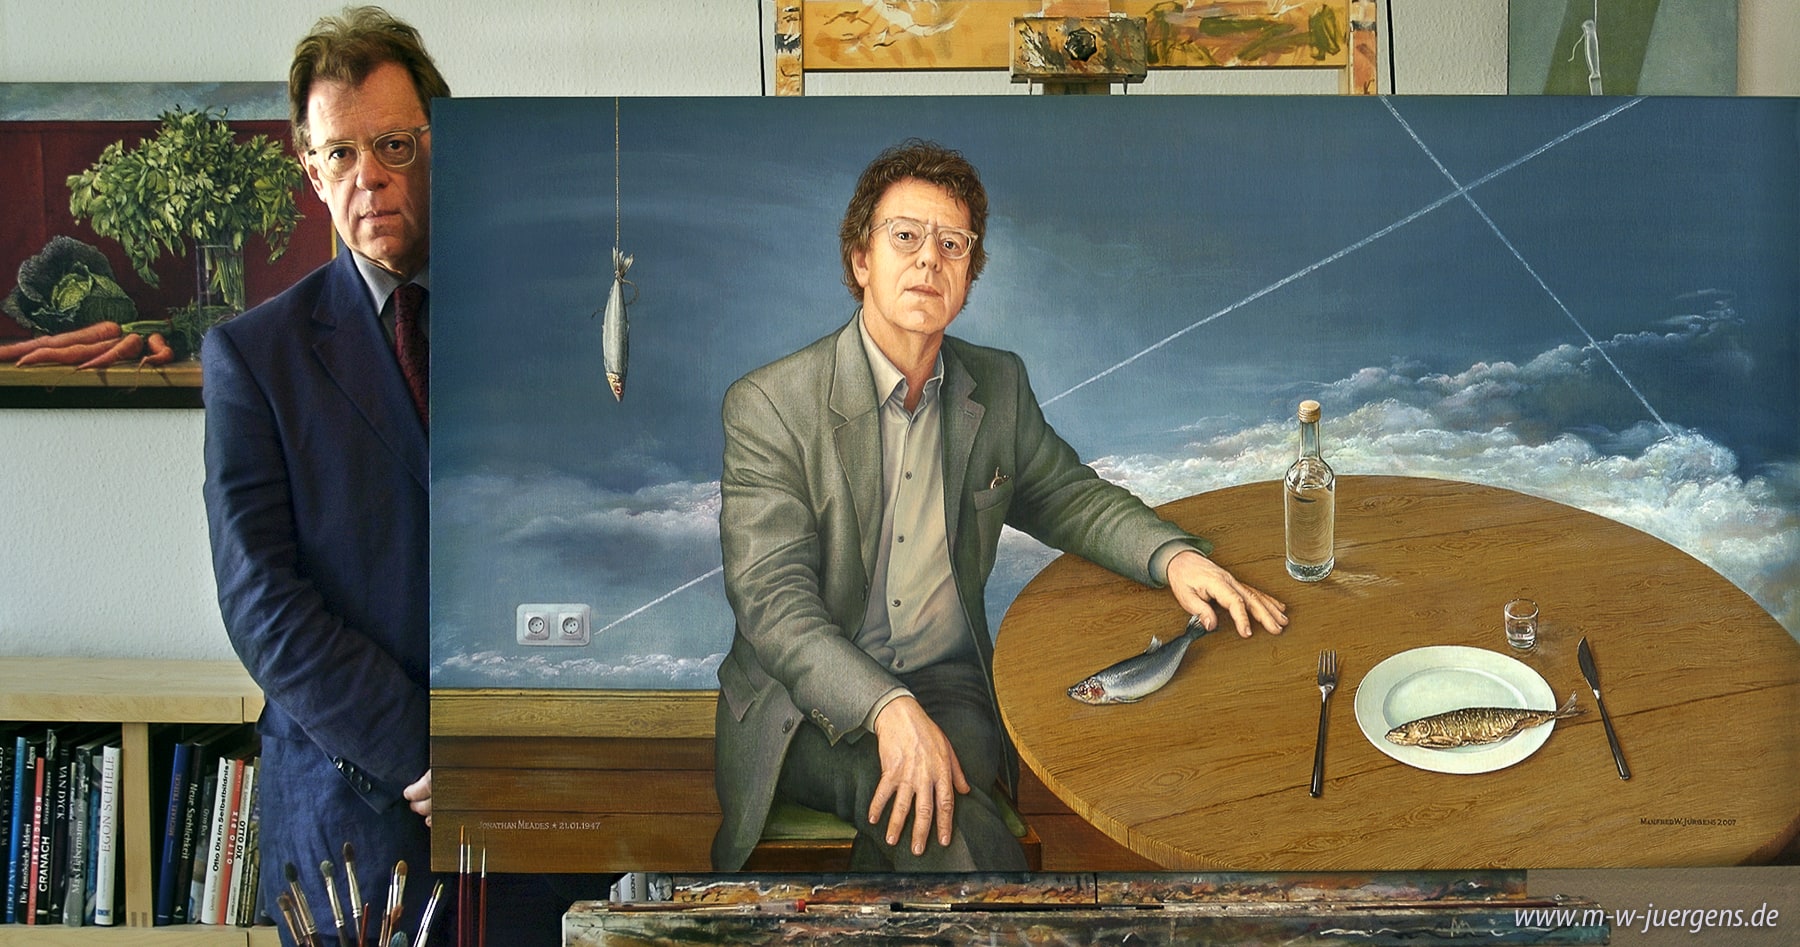 Pittura a olio, Ritratto di Manfred W. Jürgens, Ritratti pittura quadri, quadri su tavola